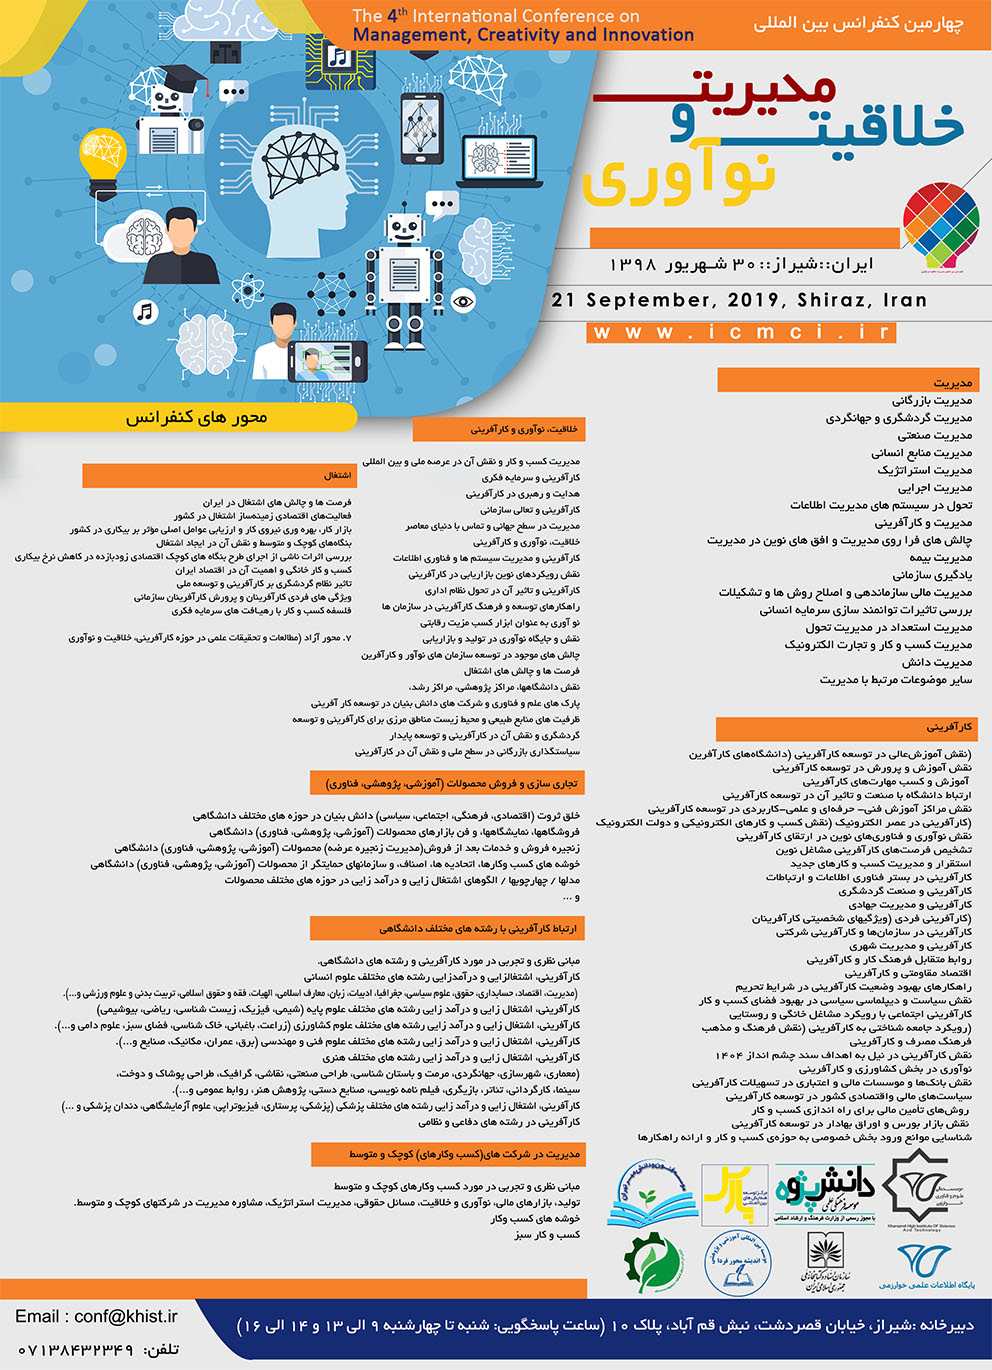 پوستر کنفرانس بین المللی مدیریت، خلاقیت و نوآوری